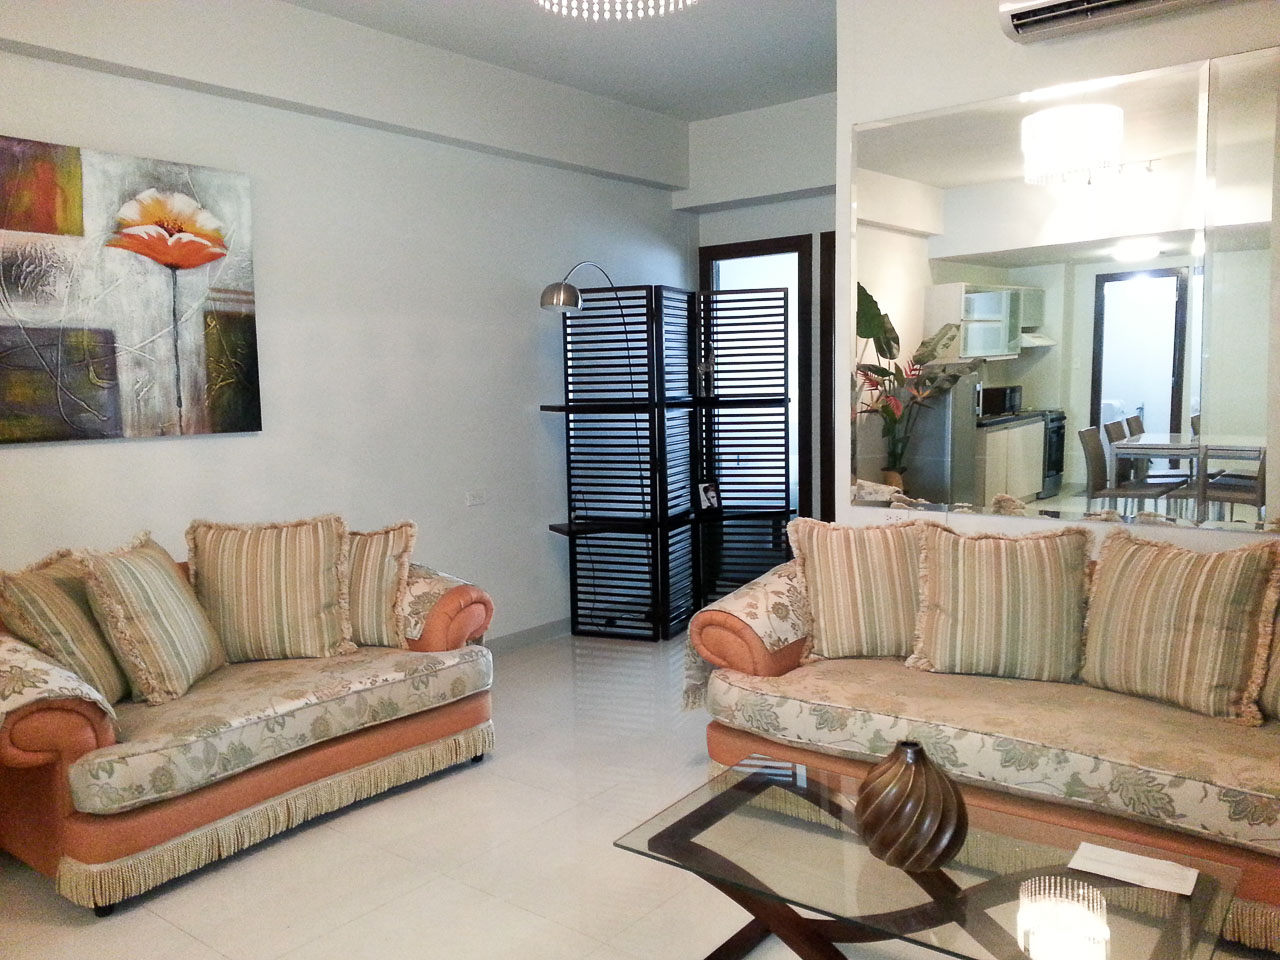 RC175 1 Bedroom Condo for Rent in Cebu Business Park Cebu Grand